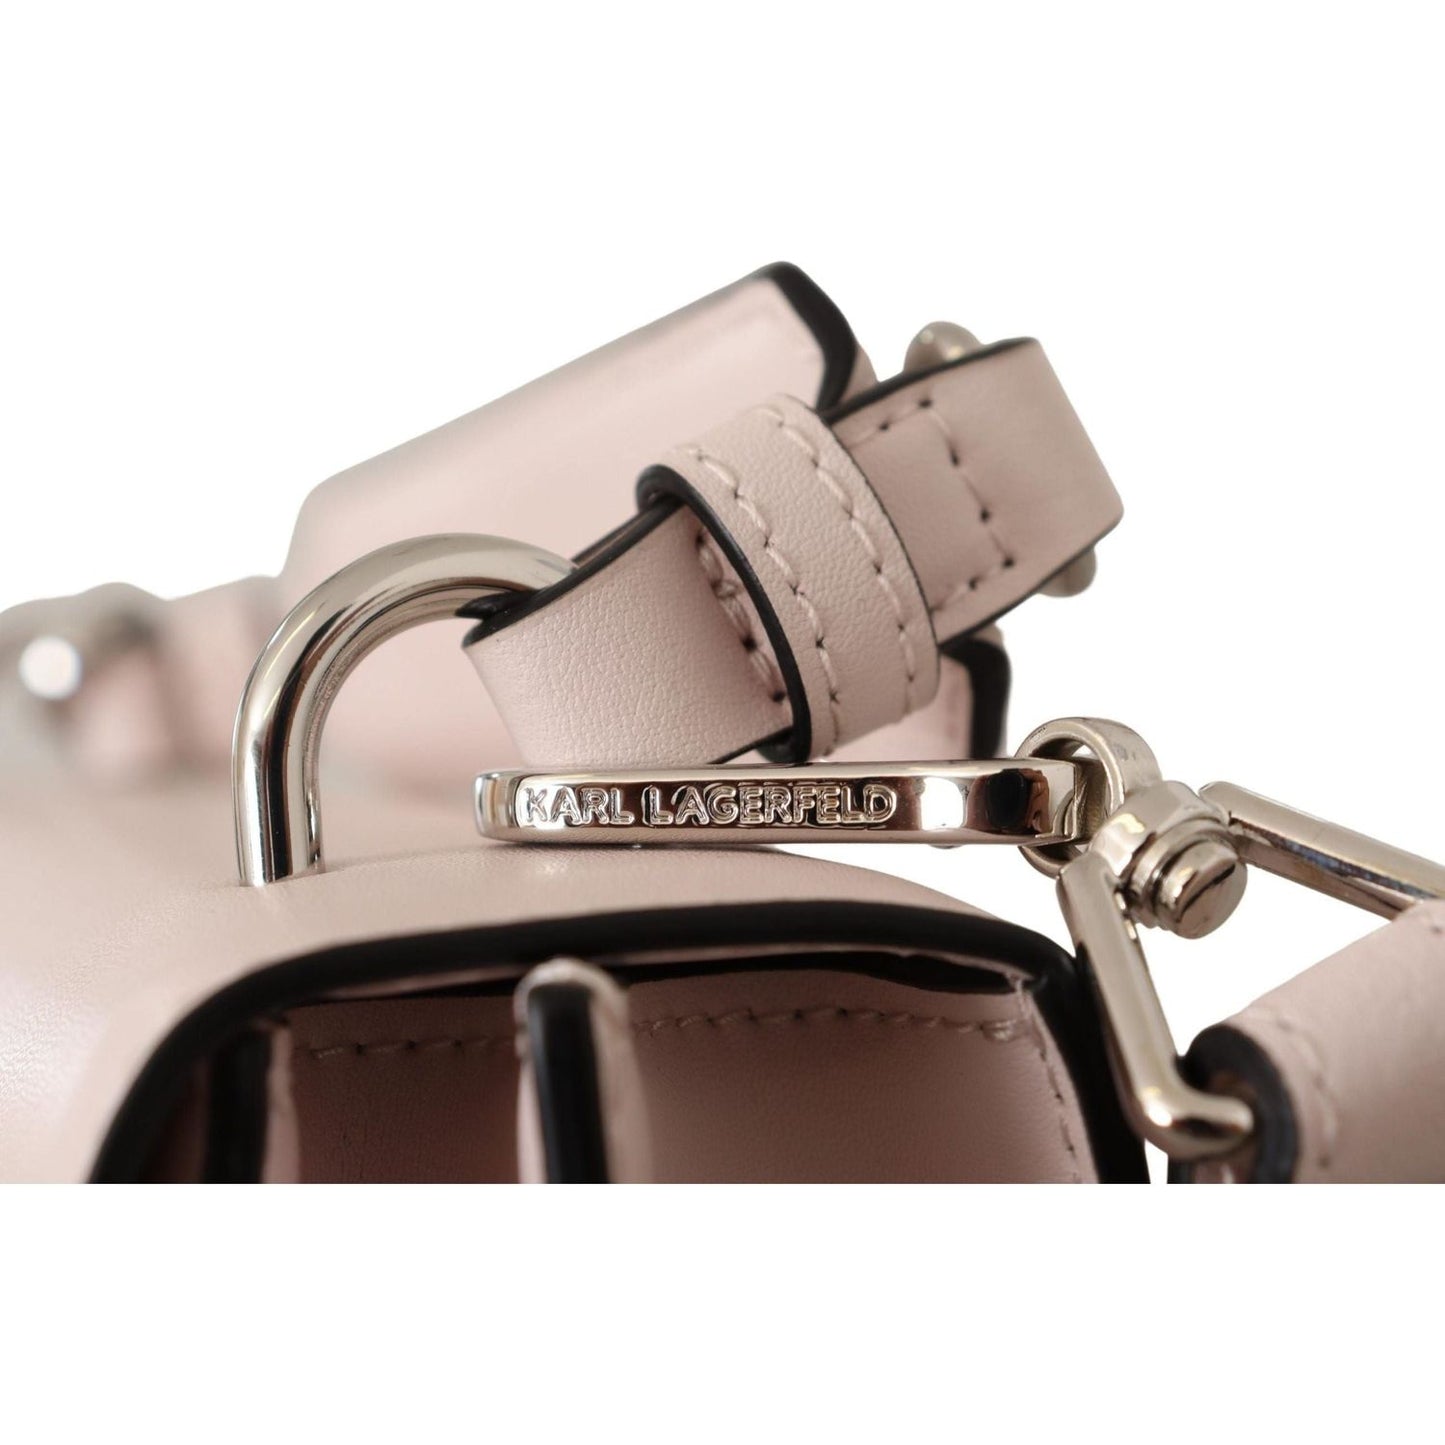 Karl Lagerfeld Mauve Elegance Leather Shoulder Bag light-pink-leather-shoulder-bag IMG_7491-scaled-4955268c-195.jpg